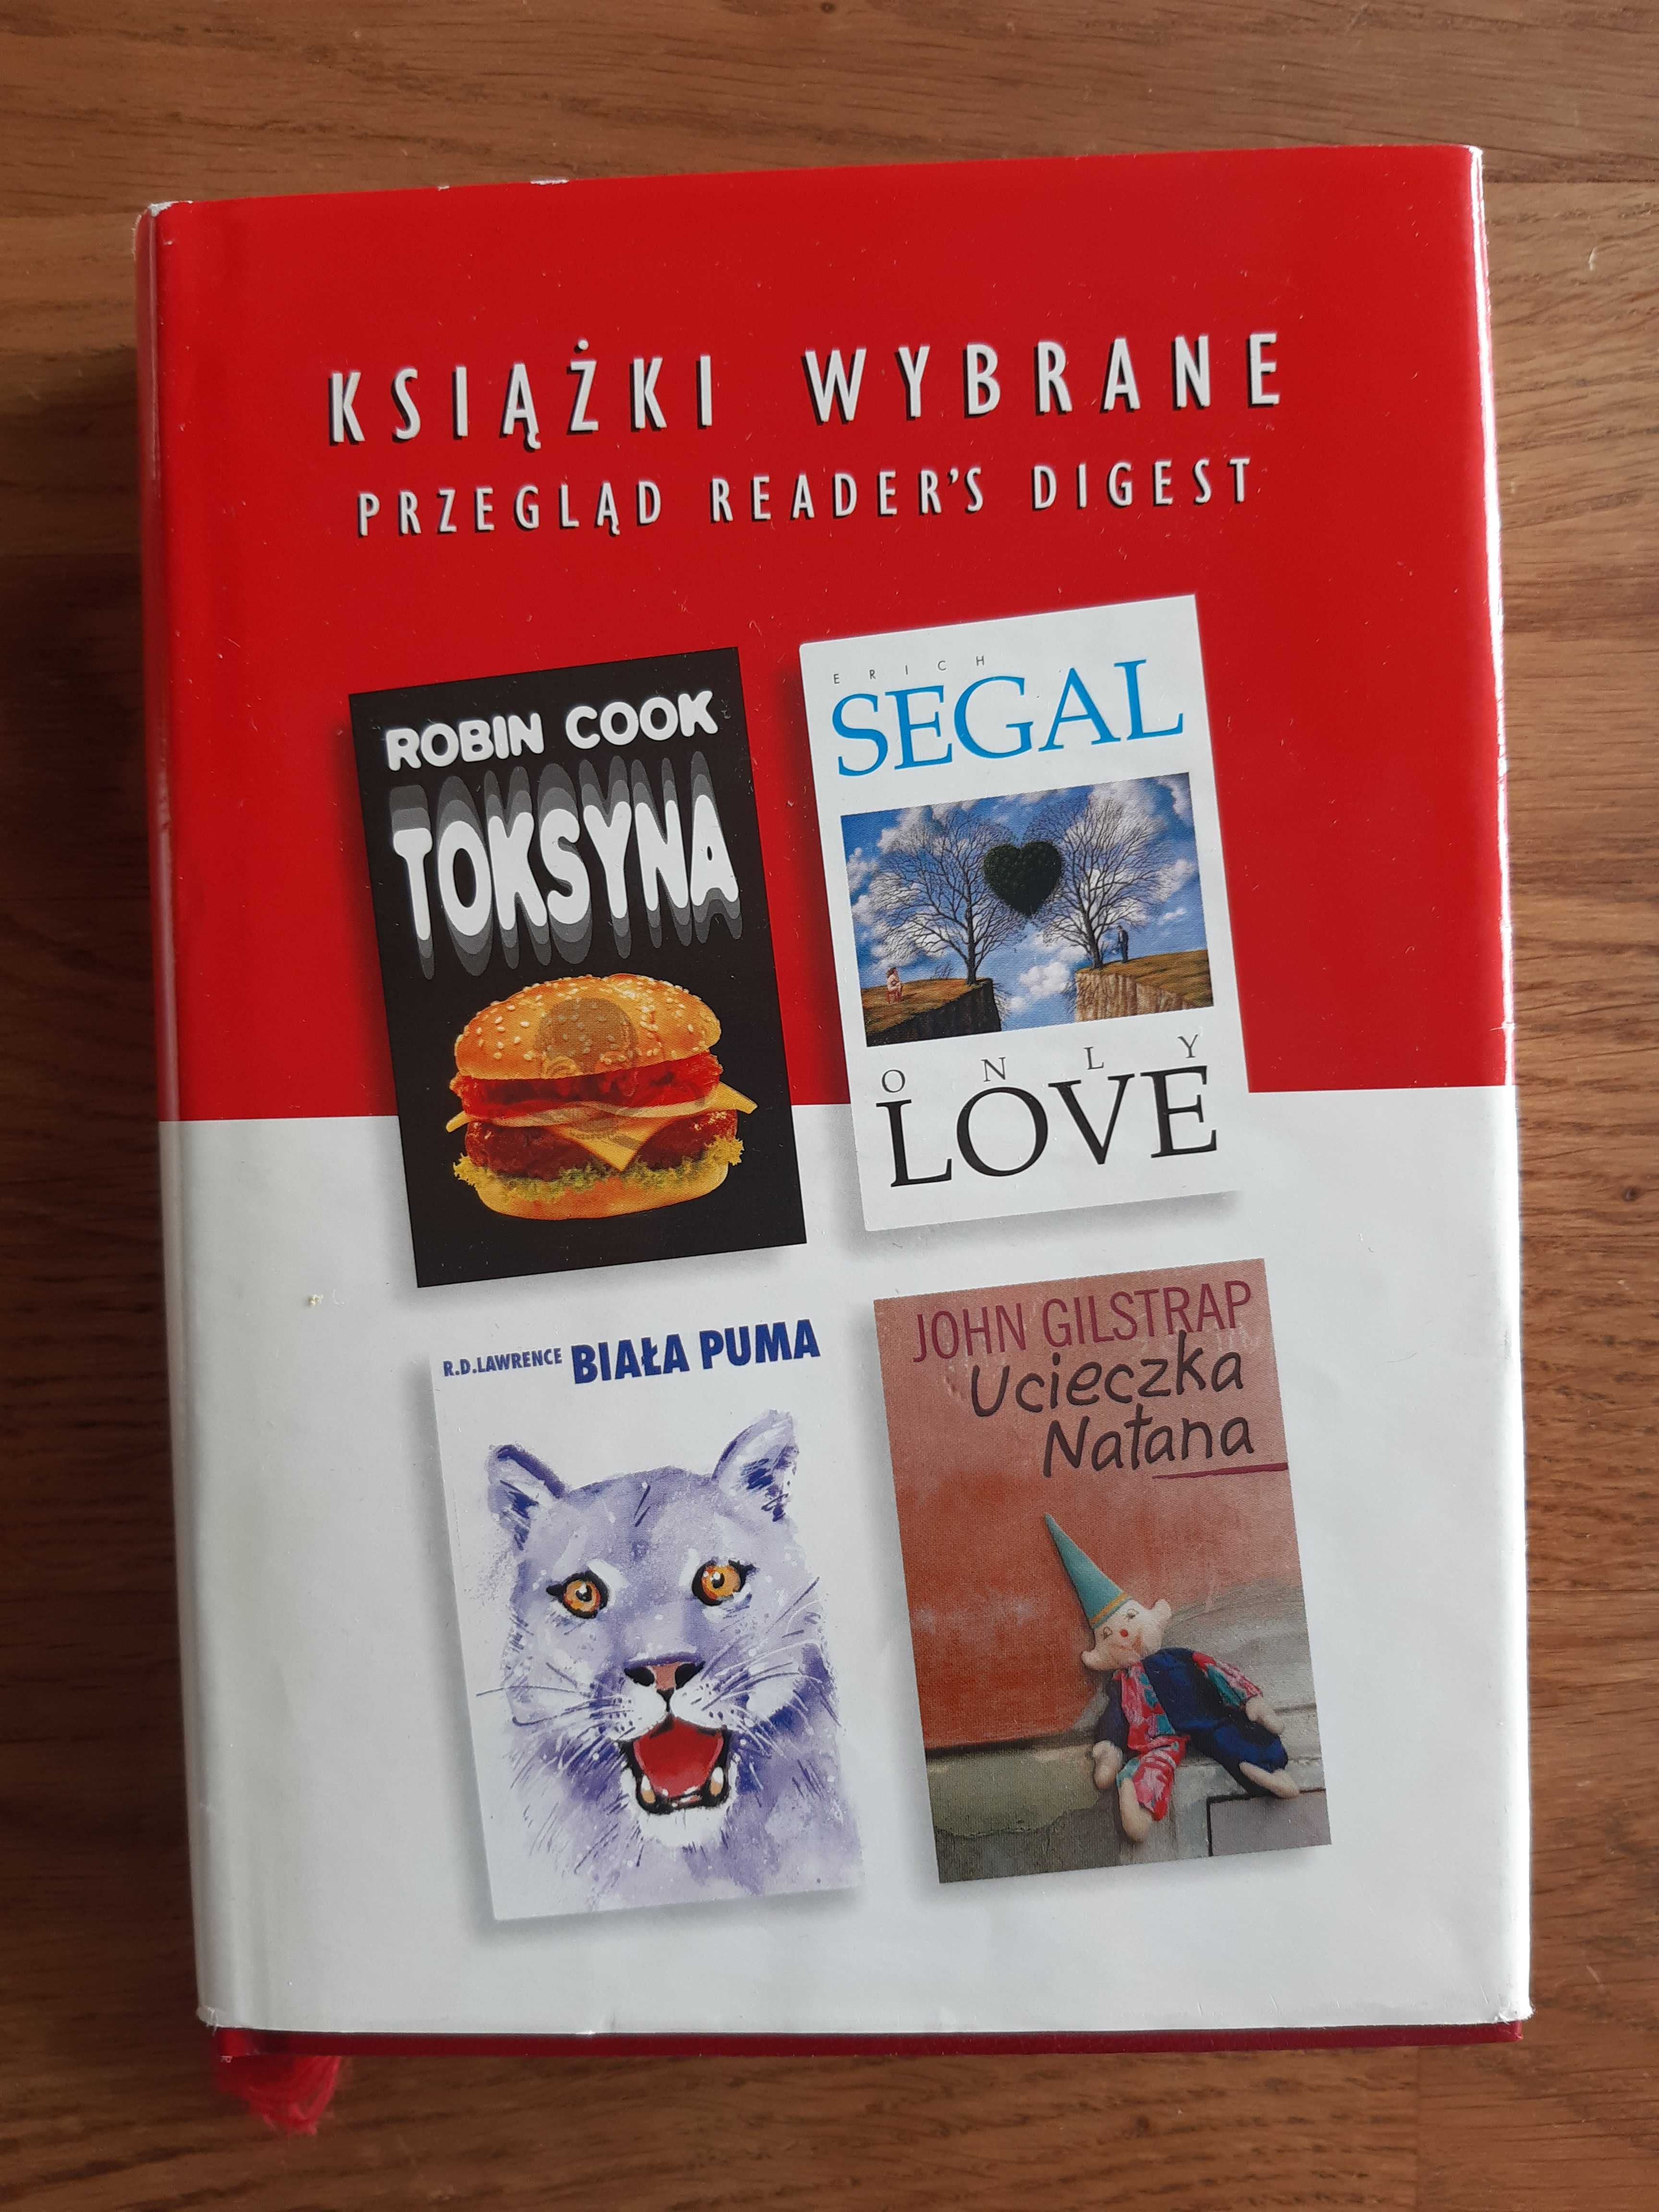 Toksyna; Only love; Ucieczka Natana; Biała puma (4 in 1)